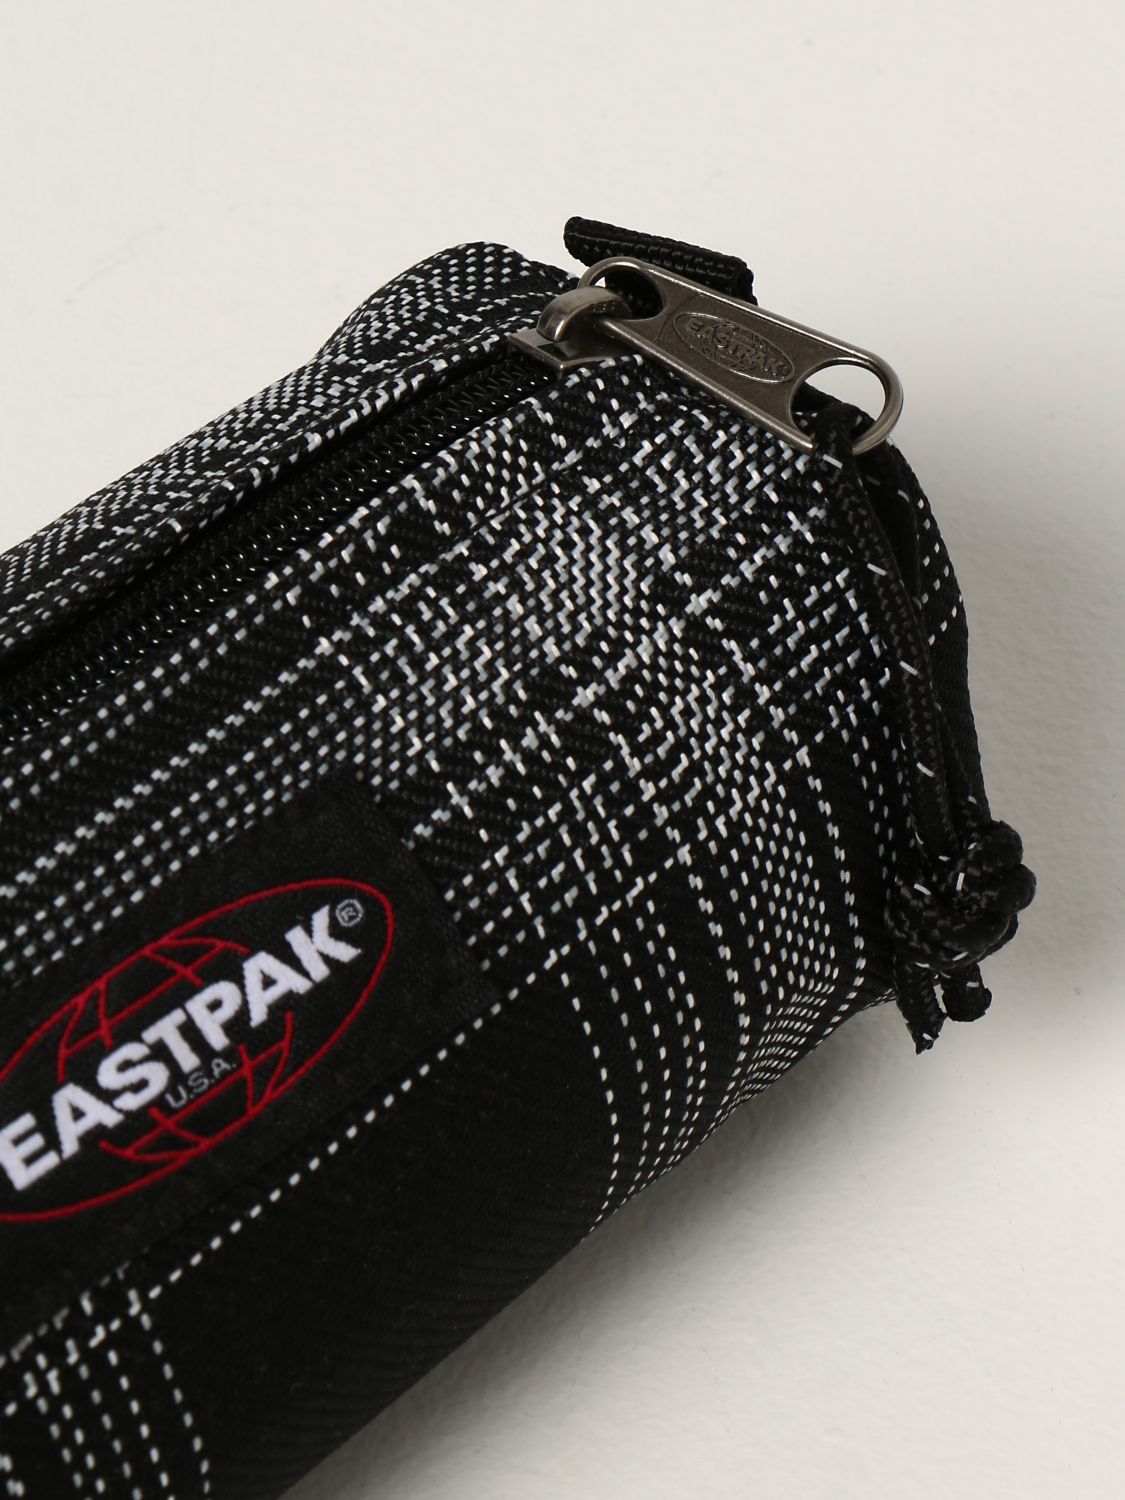 Pocket emptier Eastpak: Pocket emptier homeware Eastpak black 3